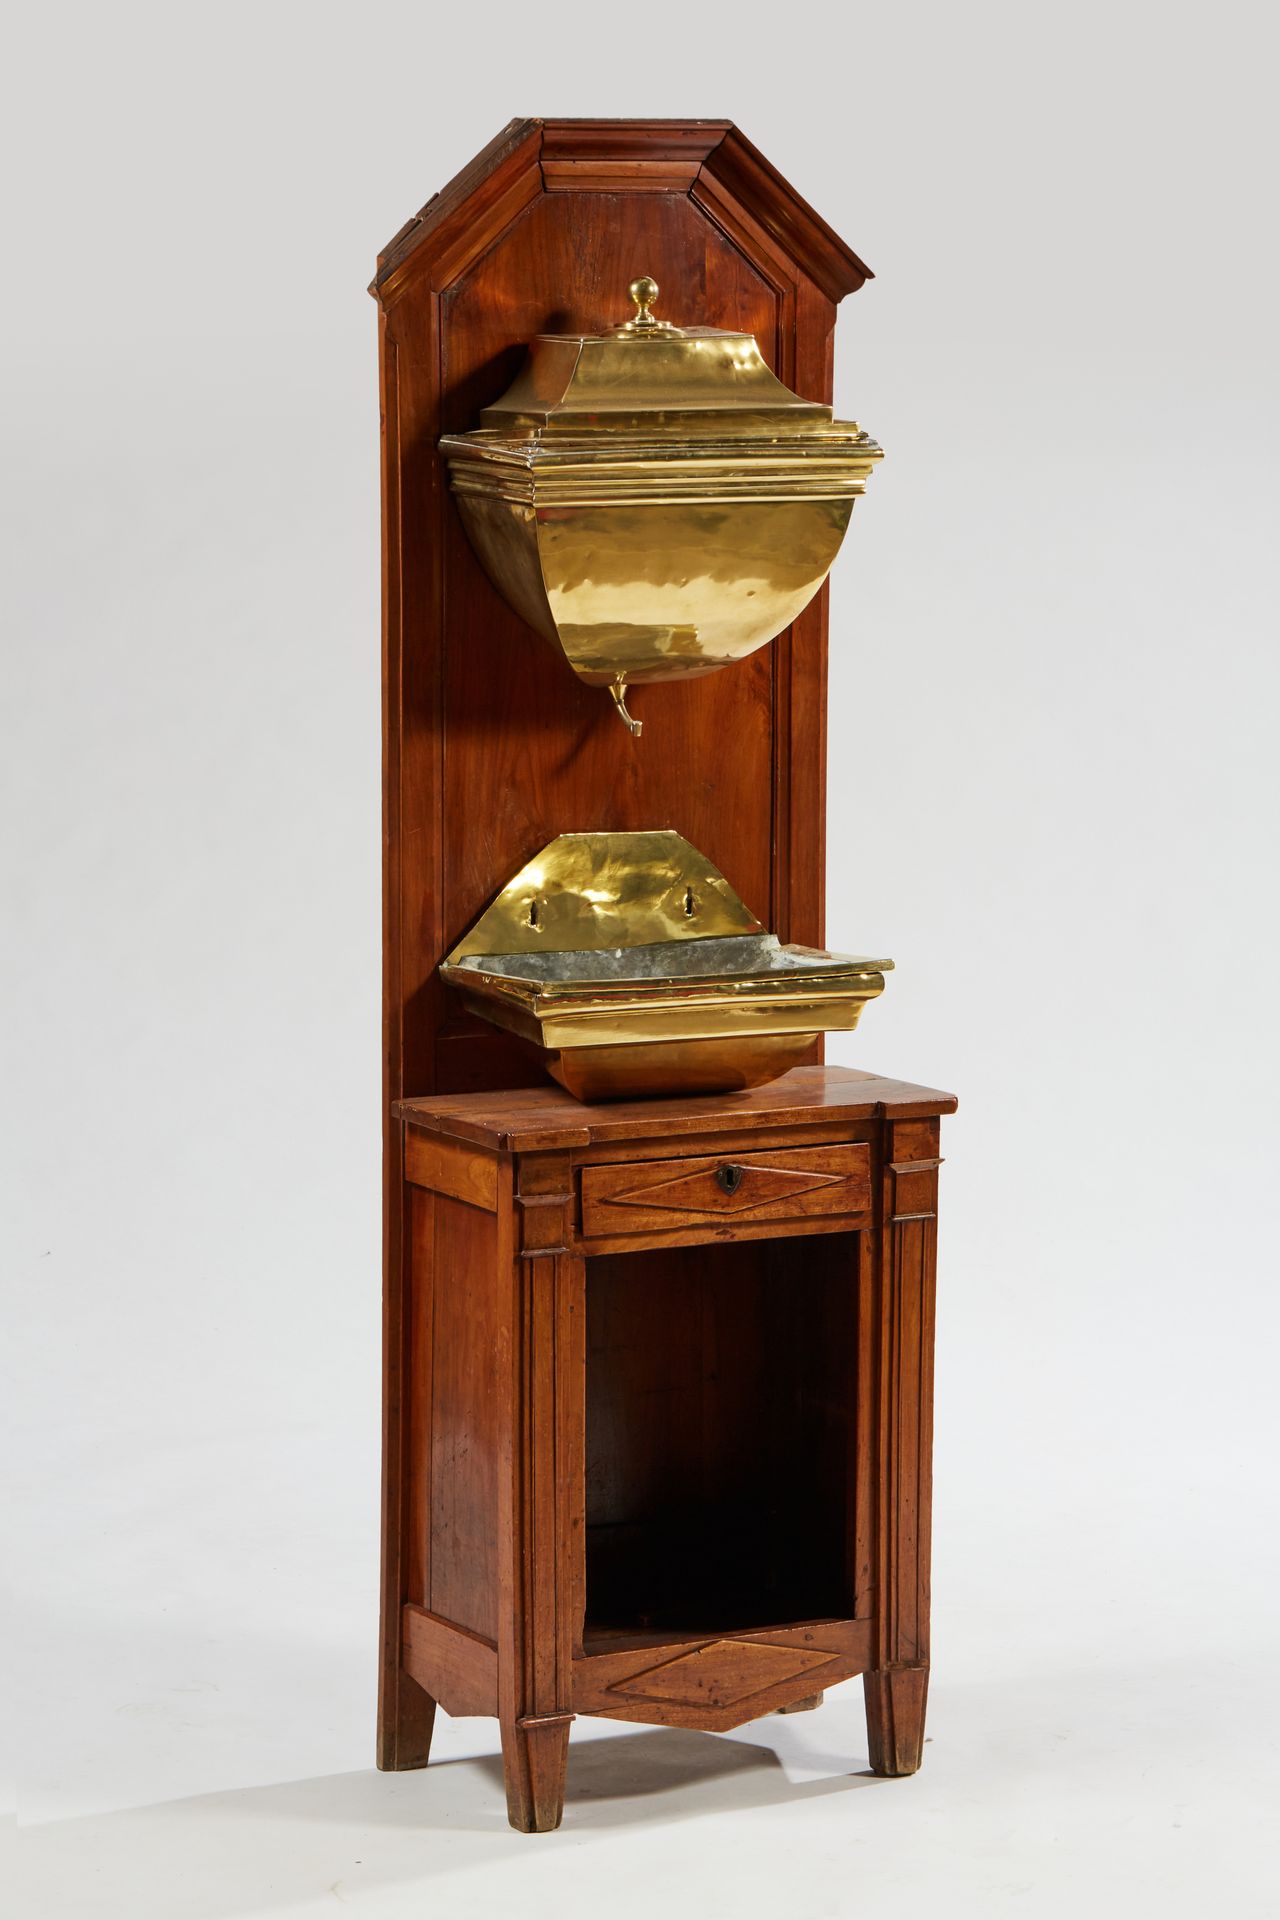 Null 呈现在天然木柜上的喷泉及其镀金的黄铜盆子


19世纪


177 x 54 x 31厘米